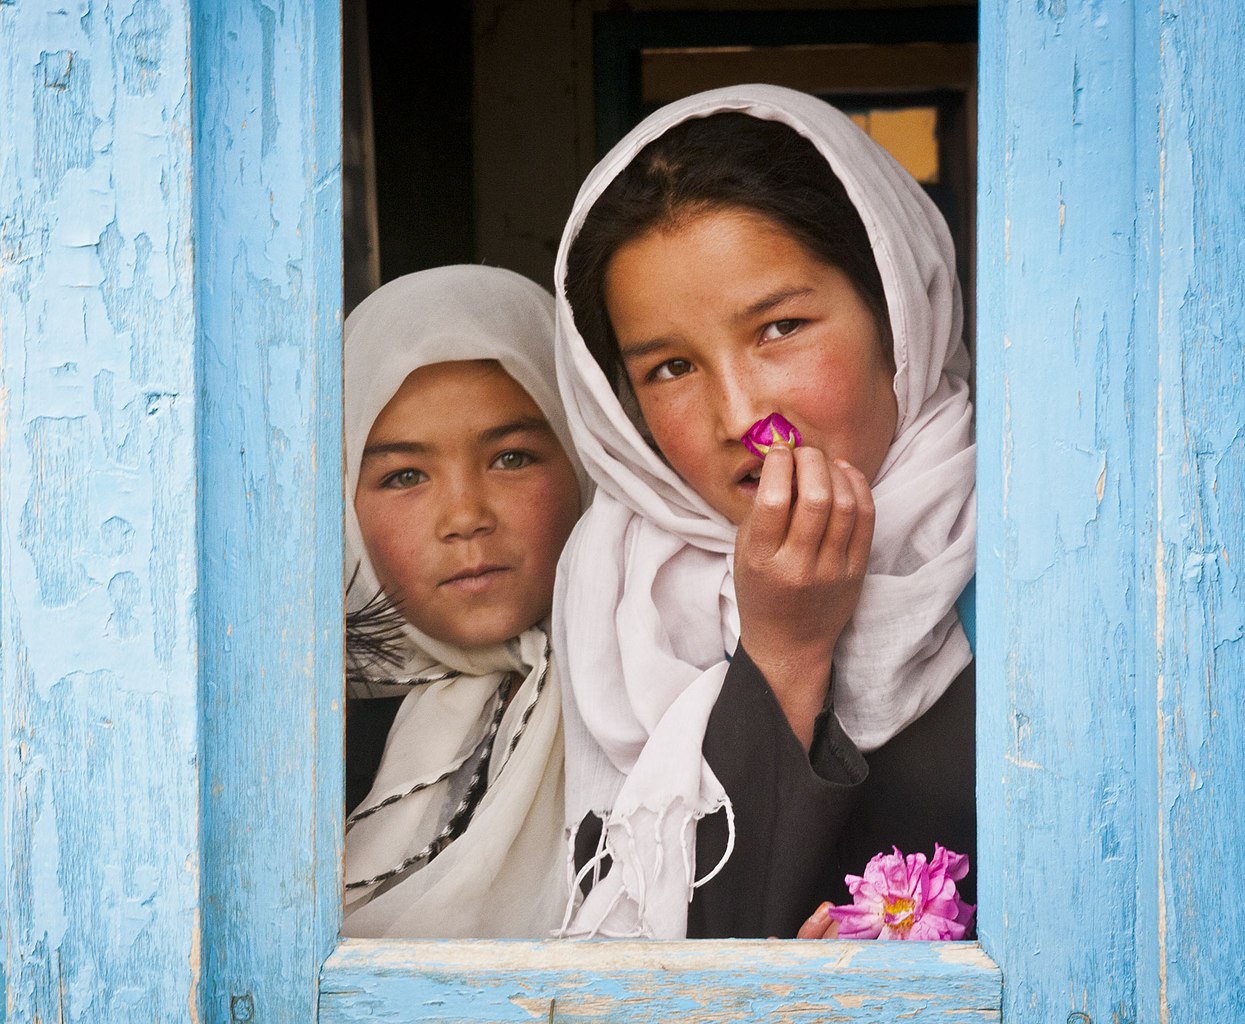 Хазарейские школьницы в Афганистане, Бамиан, 2012 год